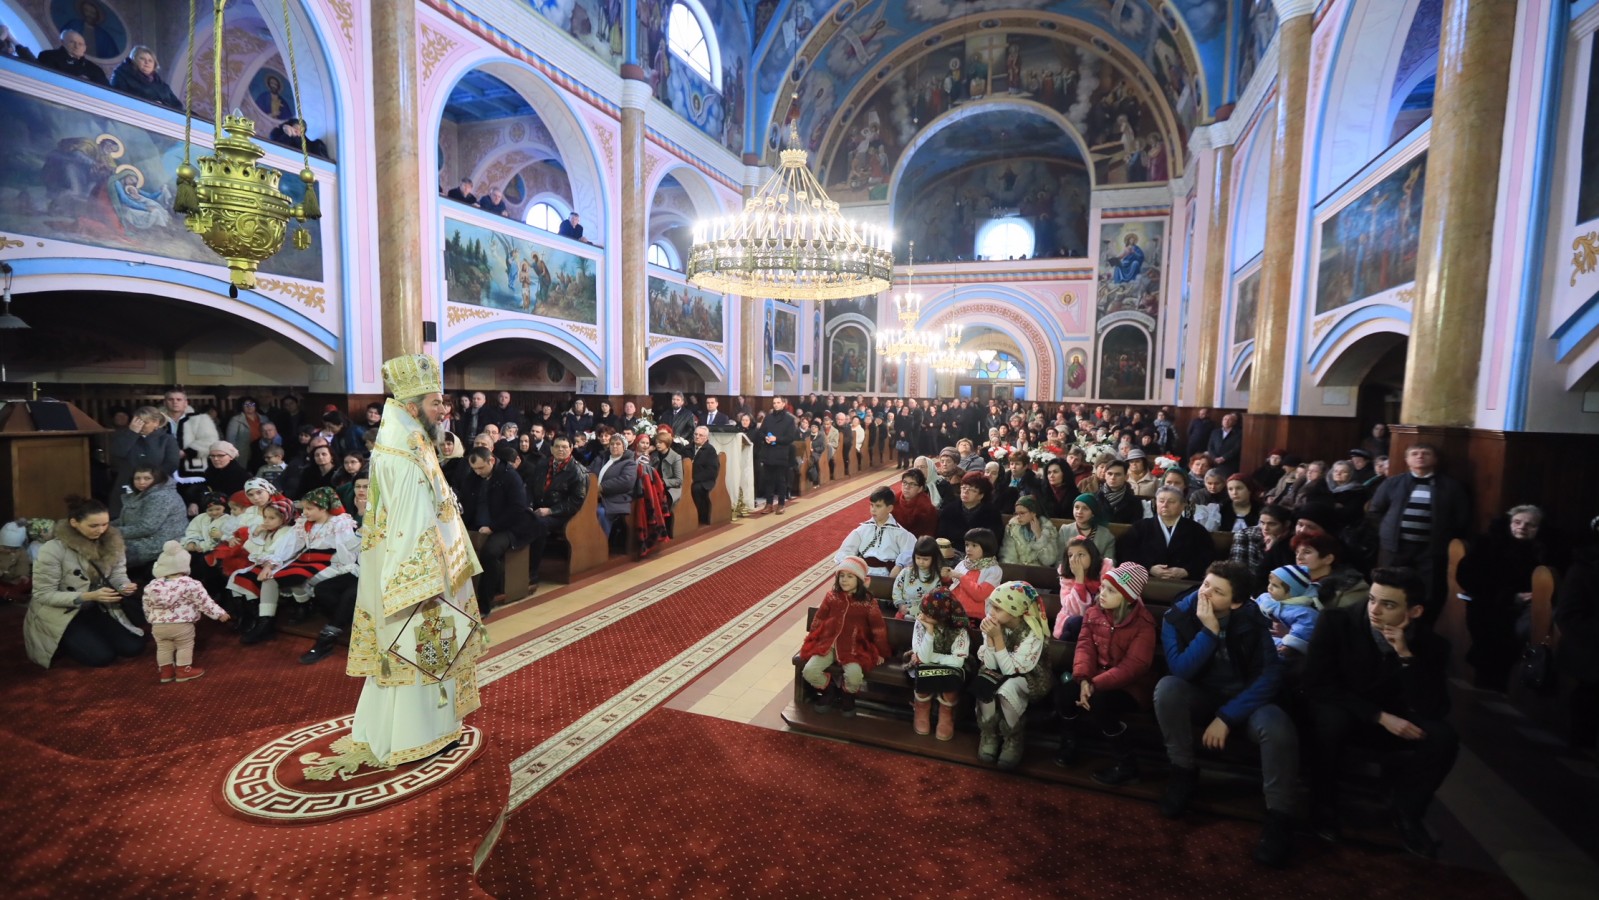 Liturghie arhierească, în Catedrala istorică din Baia Mare, în ultima zi a anului 2017